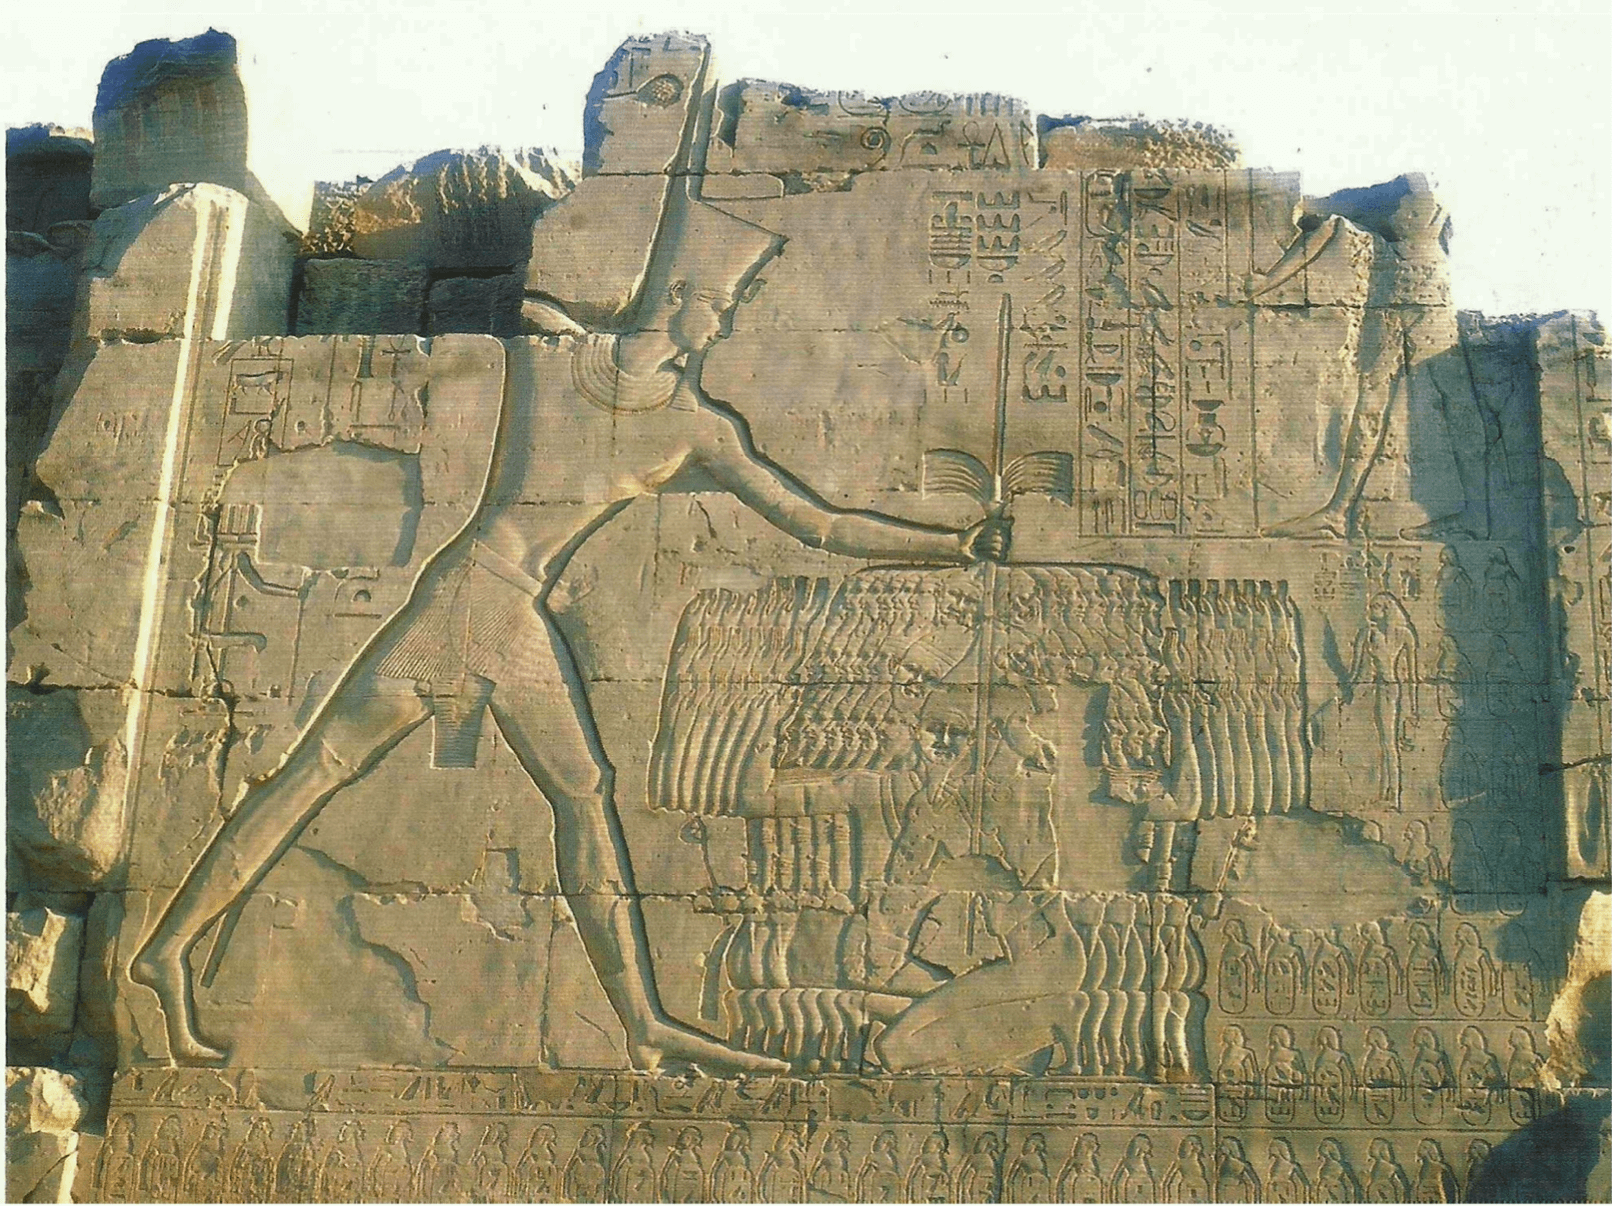 Relevo do sétimo portal do templo de Amon, em Karnak, Egito. Representa o rei Tutmósis III (1479-1425 a.C.) golpeando prisioneiros asiáticos com os braços levantados, suplicando por misericórdia.